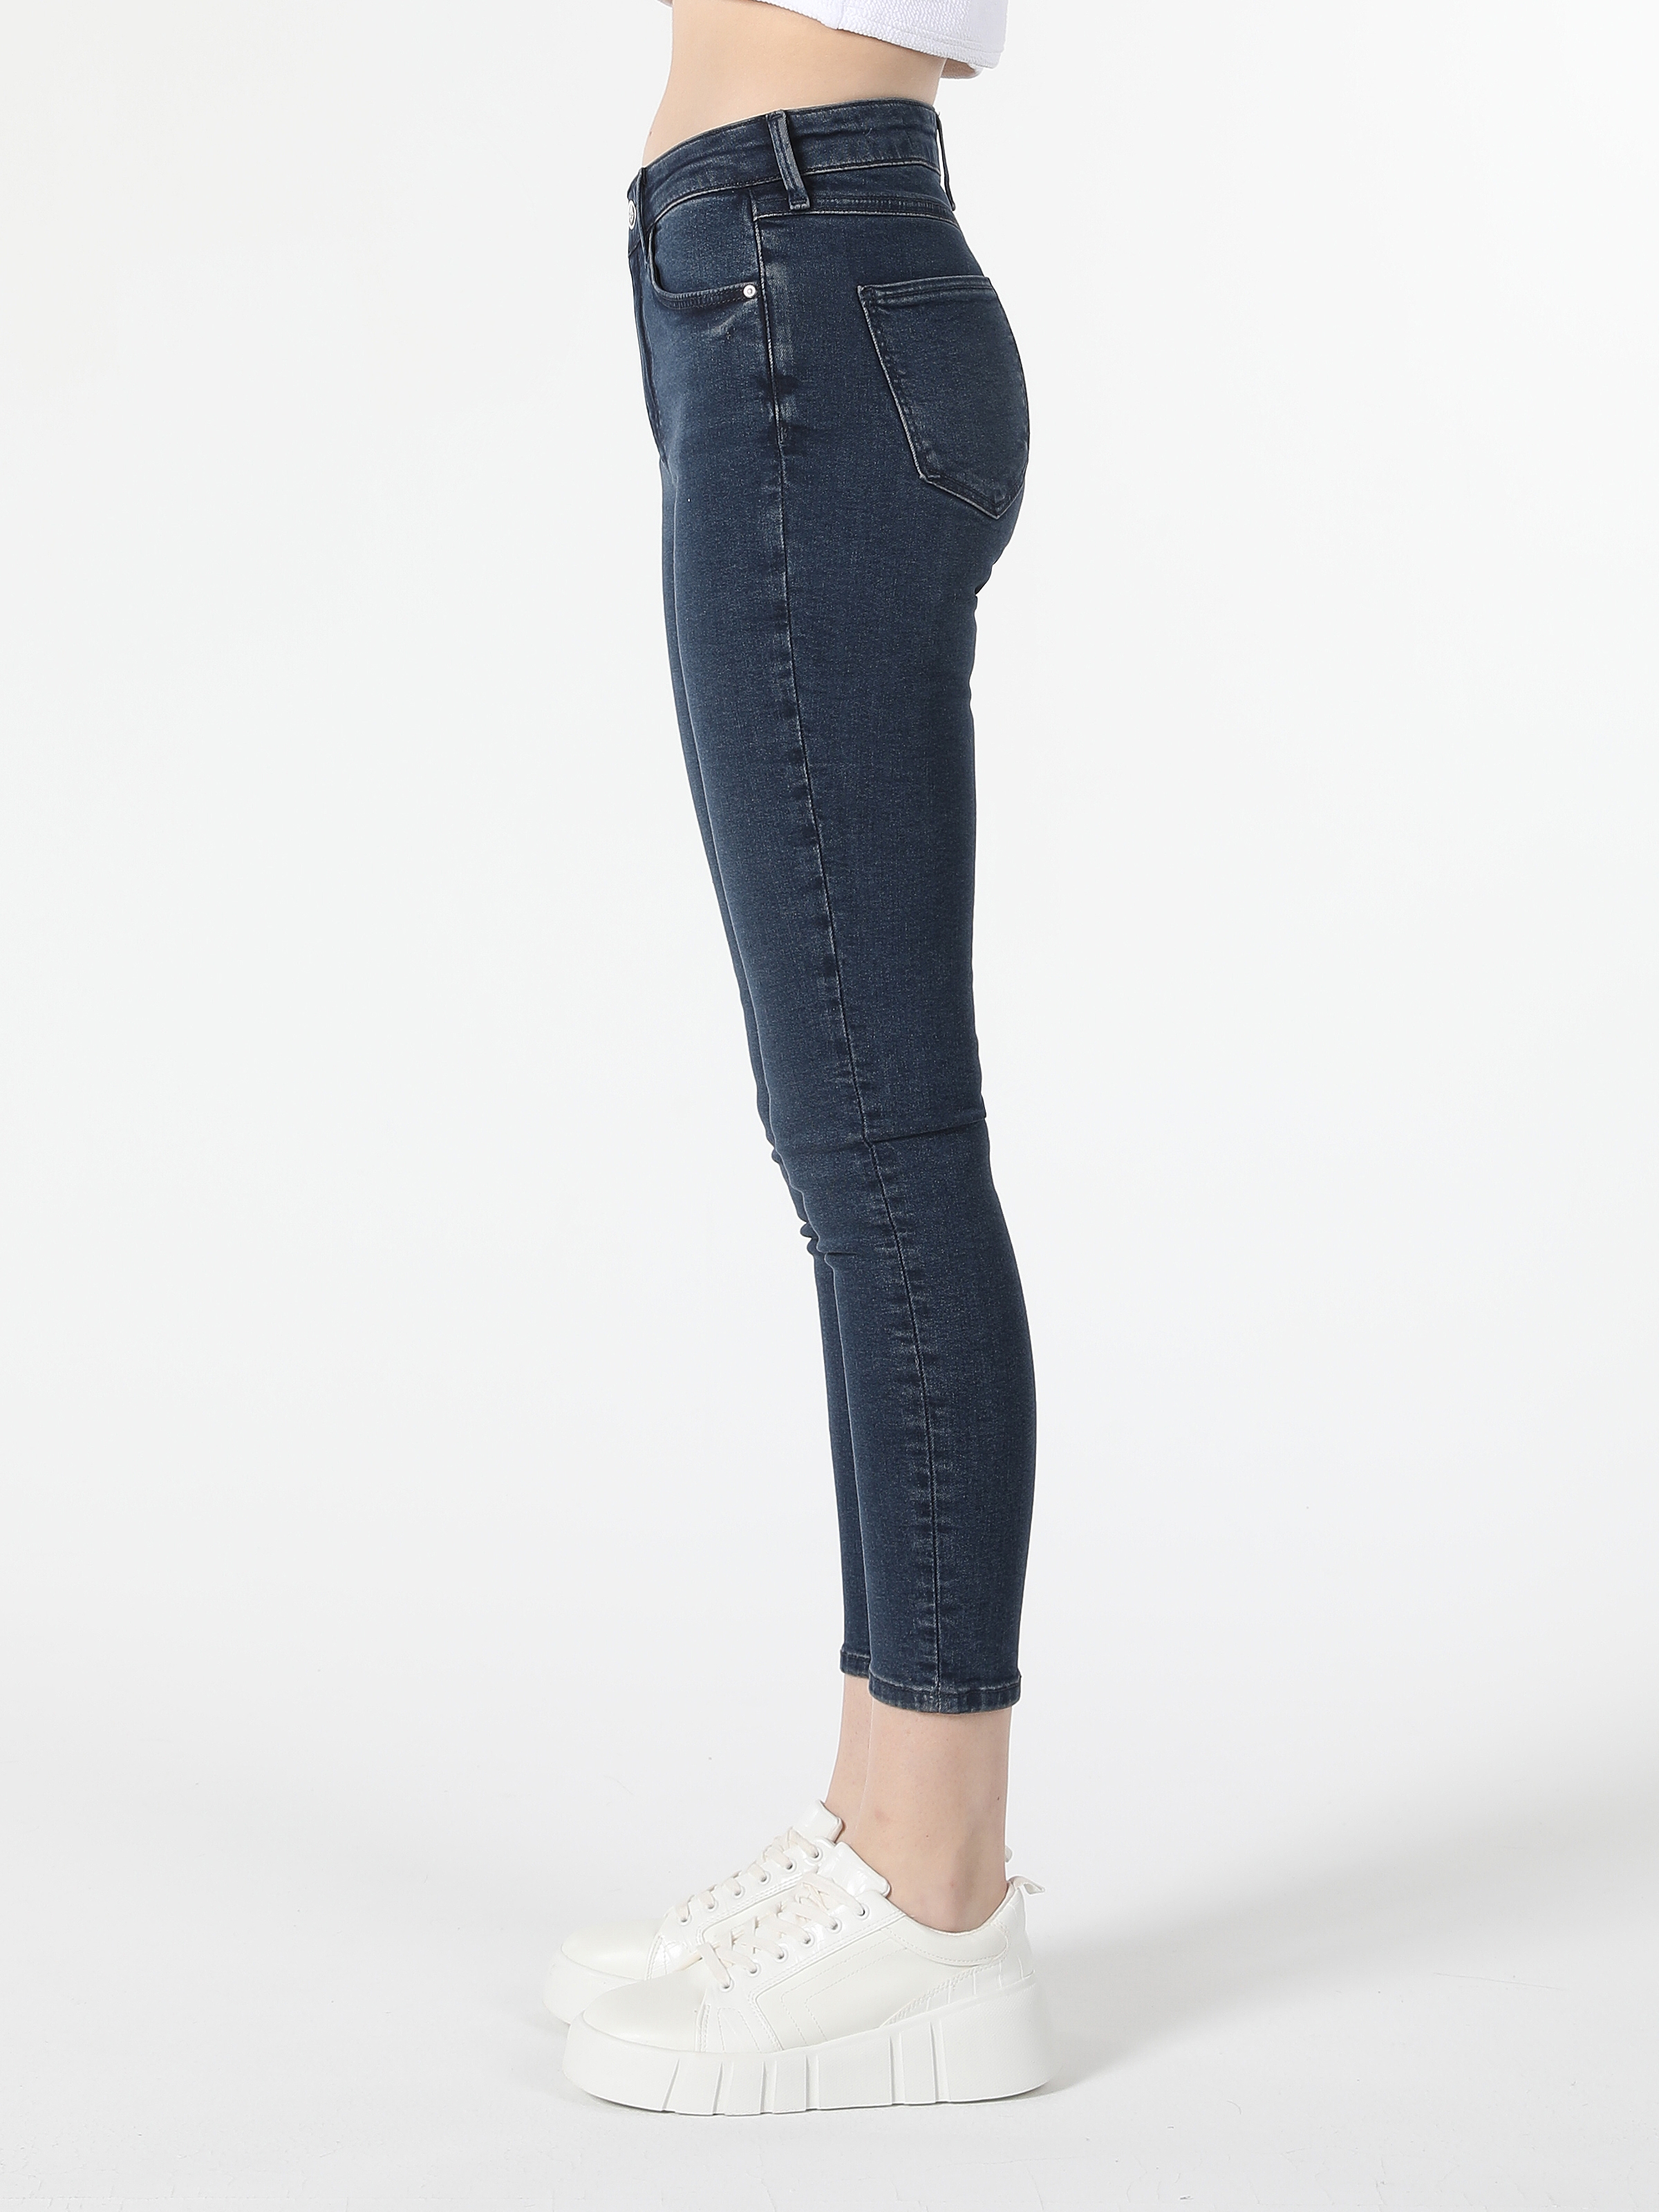 Afficher les détails de 759 Lara Super Slim Fit Taille Normale Jambe Étroite Pantalon Jean Bleu Femme